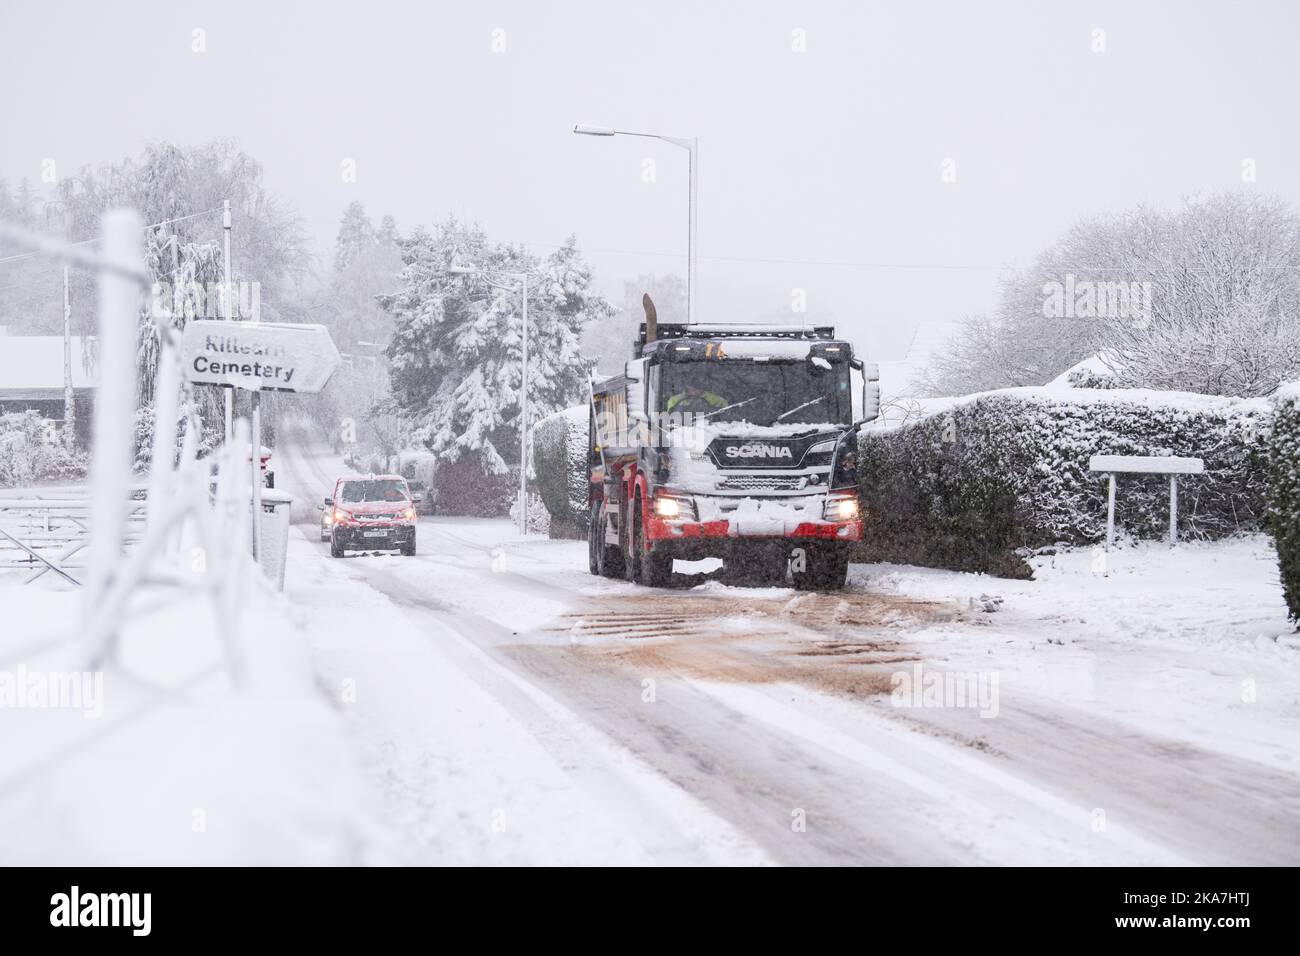 Les gravillons se répandent sur une route enneigée pour aider un camion à grimper une colline glissante, Killéarn, Stirling, Écosse, Royaume-Uni Banque D'Images